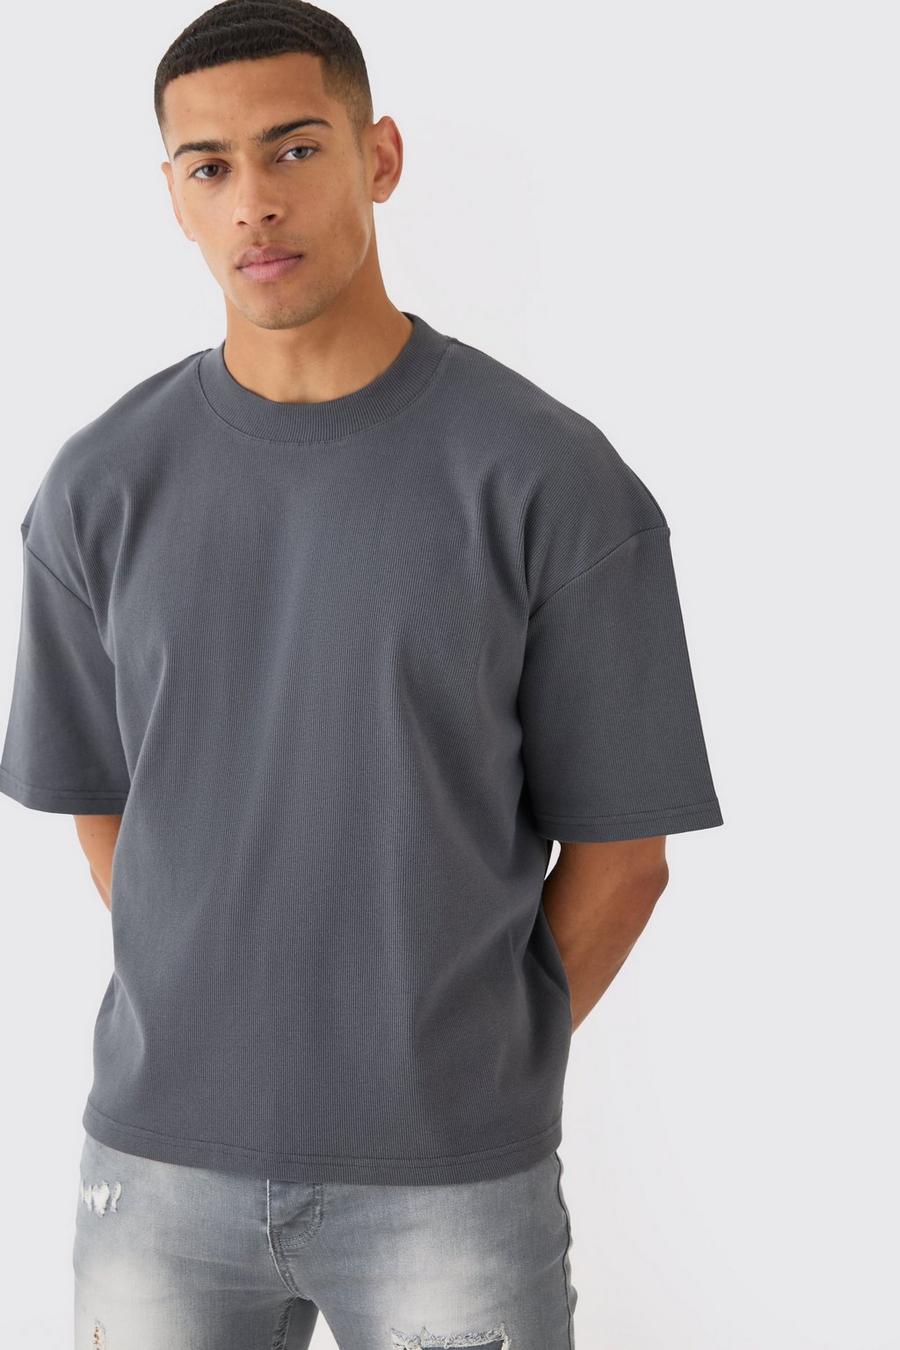 Kastiges geripptes Oversize T-Shirt, Charcoal